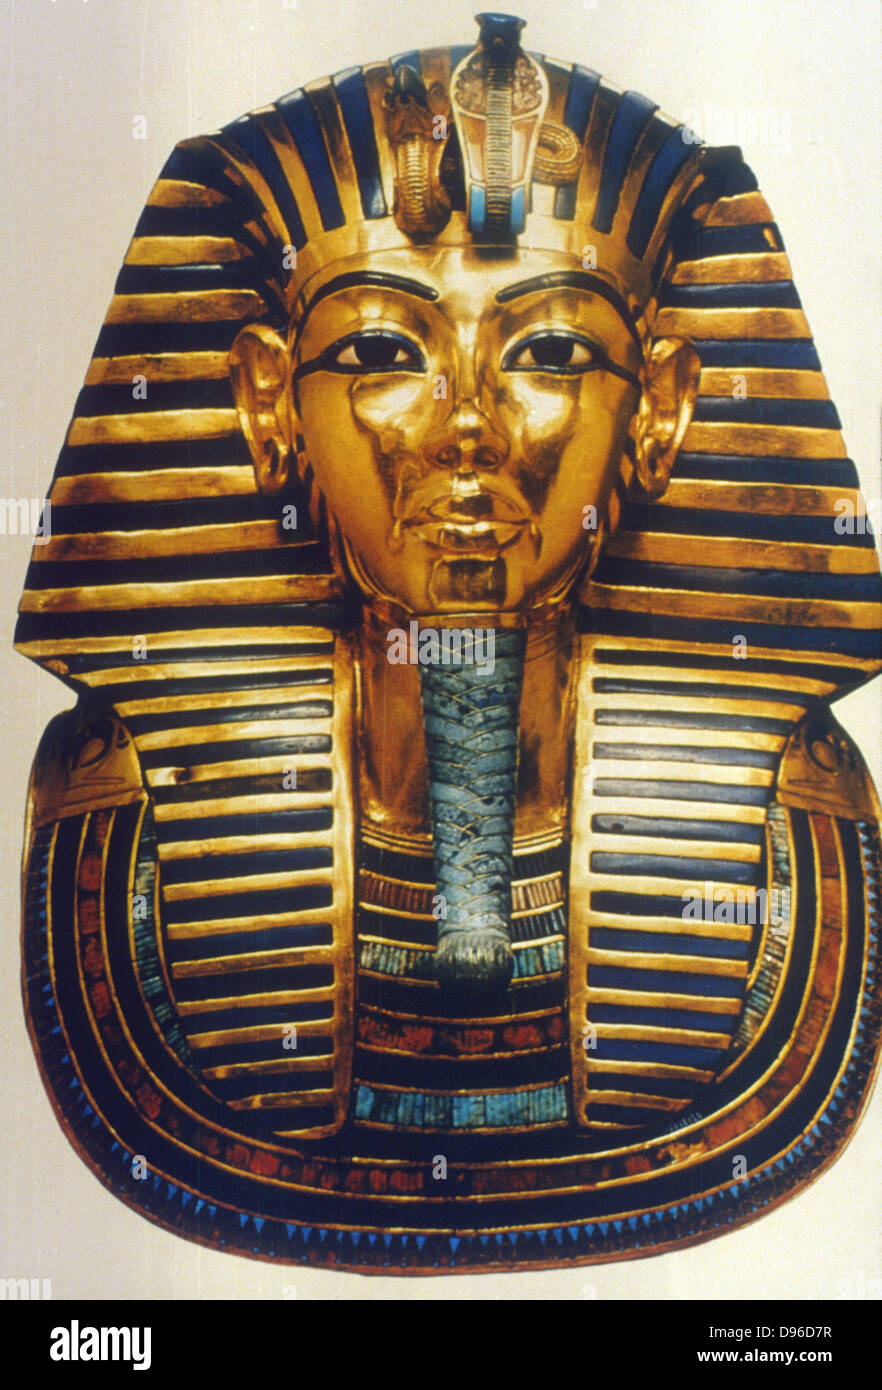 Tutanchamun (Tutankamen), König von Ägypten, regierte 1361-1352 v. Chr.. 18. Dynastie. Gold und Lapislazuli Grabkunst Maske. Ägyptisches Museum, Kairo Stockfoto